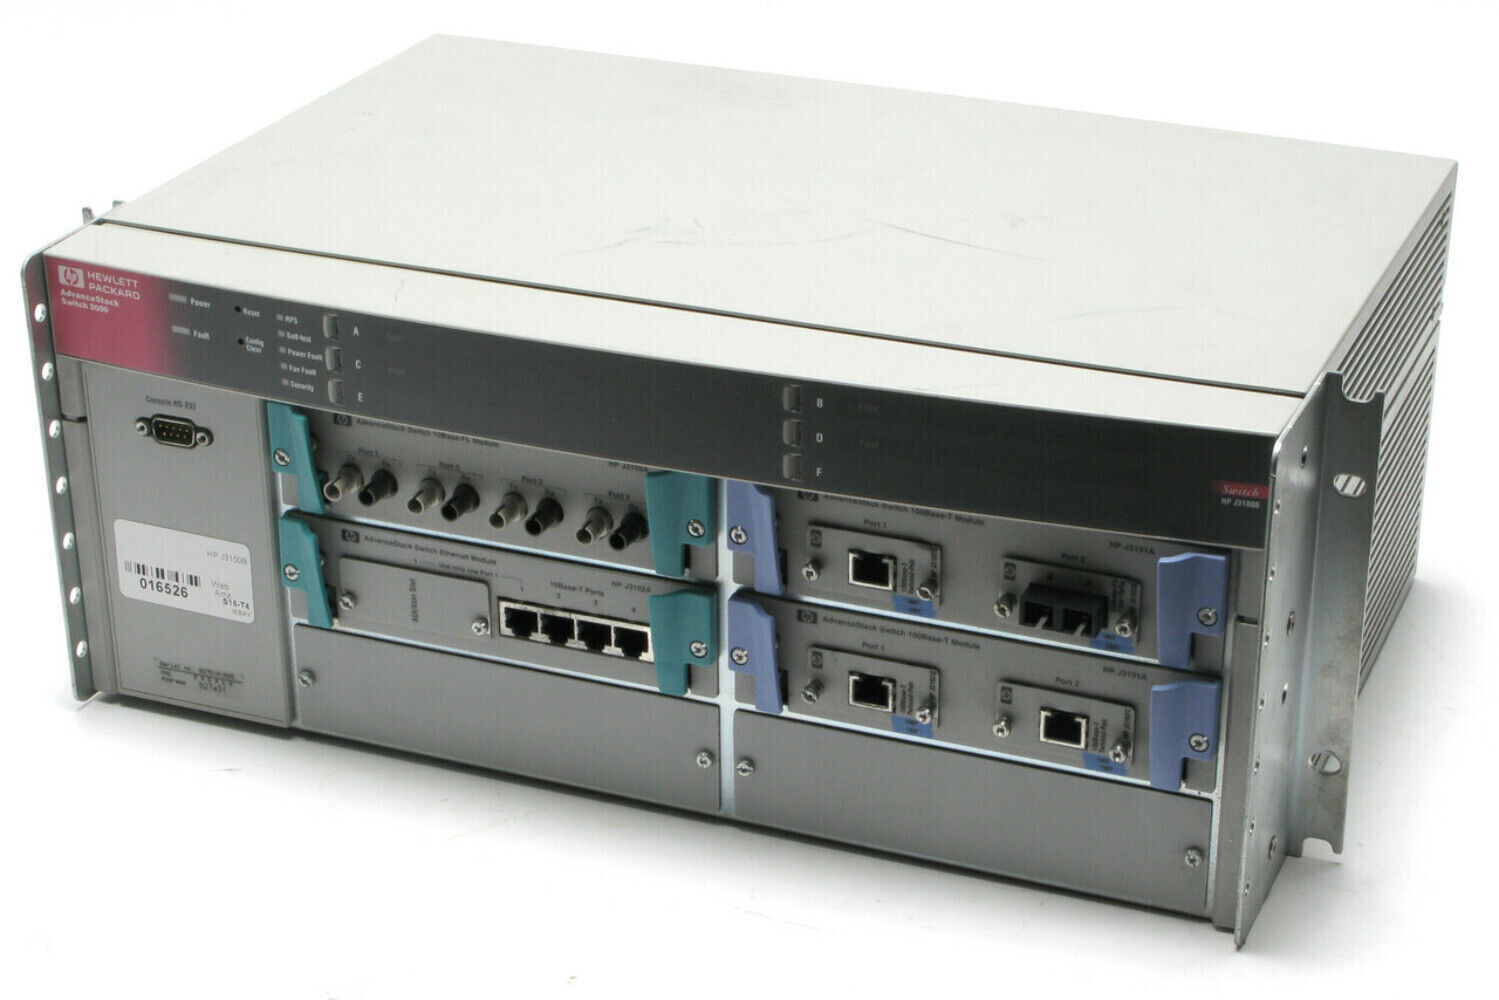 HP J3100B Advance Stack Switch 2000 w/J3109A, J3102A, J3191A x2 modules